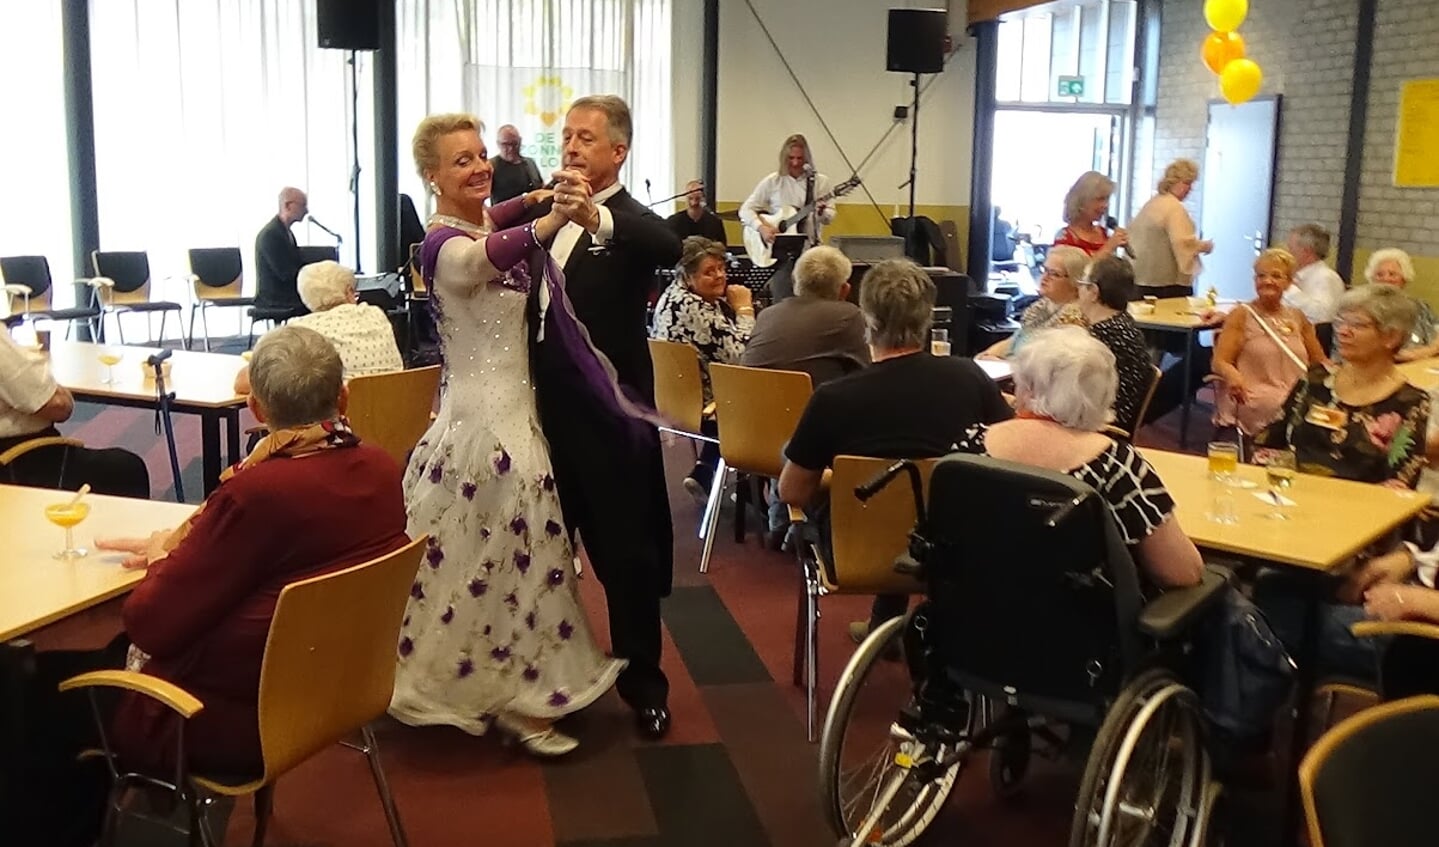  Wedstrijddansers Raymond en Ingrid gaven een demonstratie ballroomdansen. (Foto: aangeleverd)